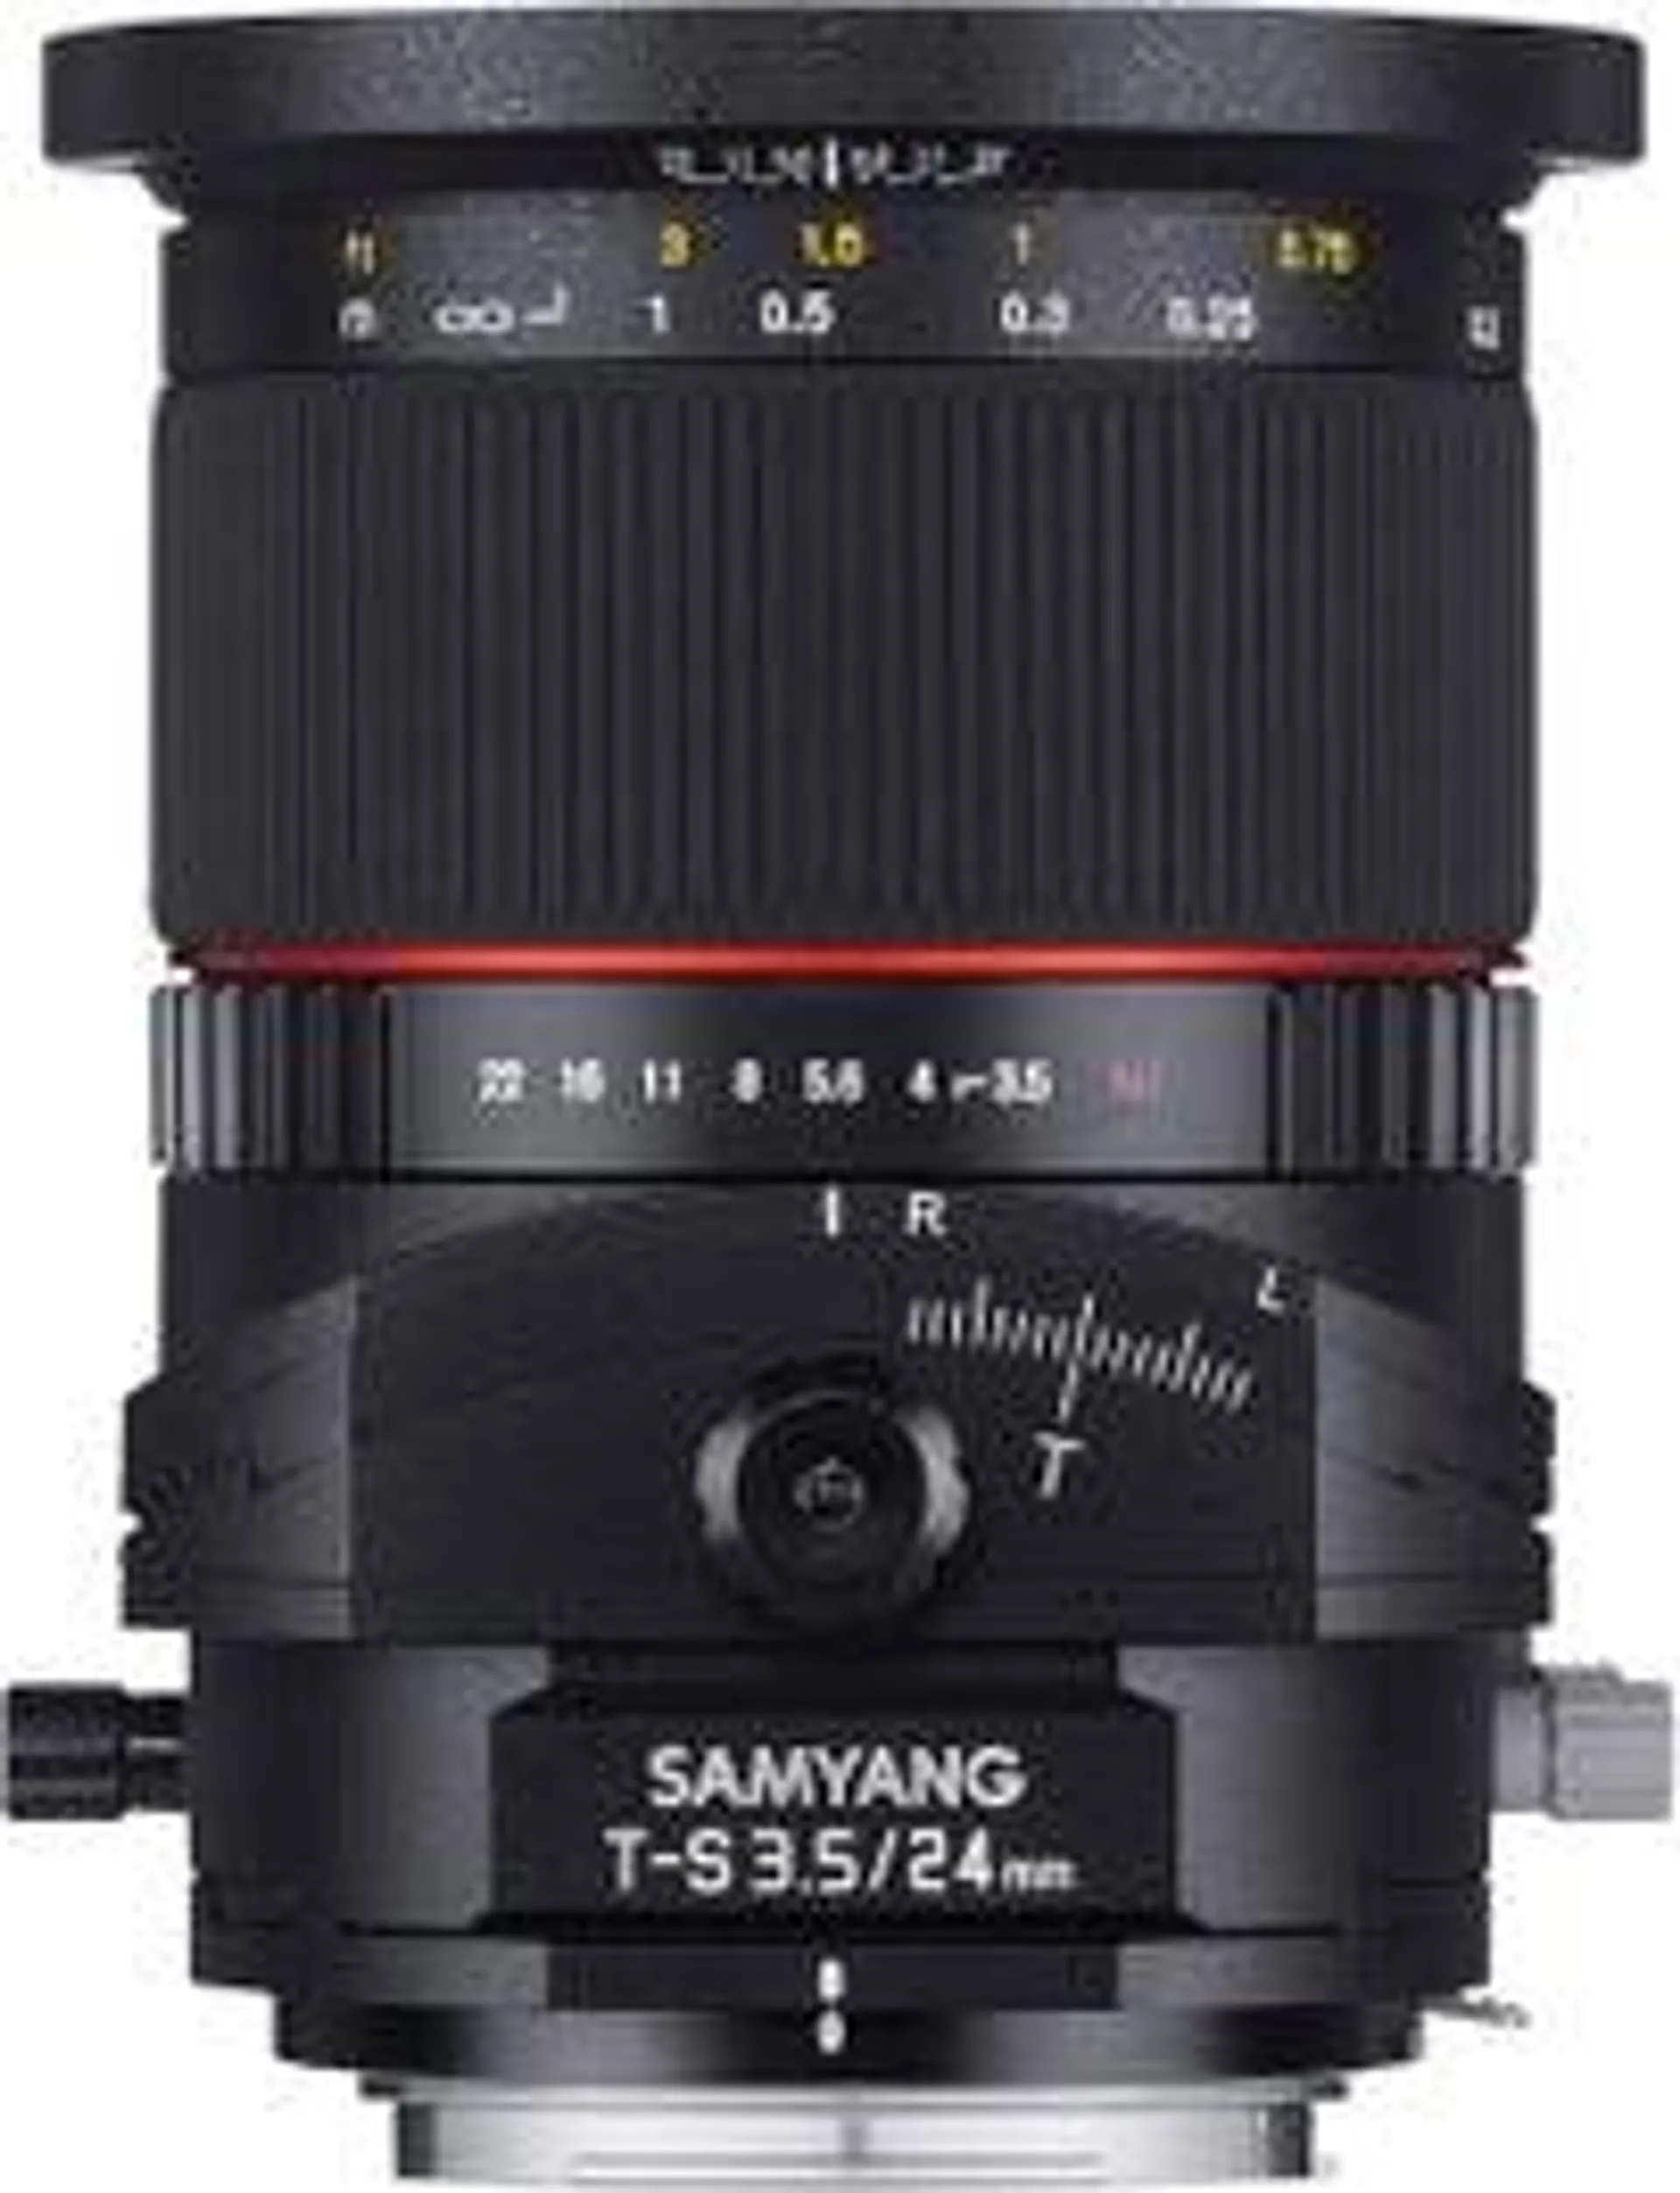 Samyang 24mm f/3.5 Tilt & Shift - Micro 4/3rds